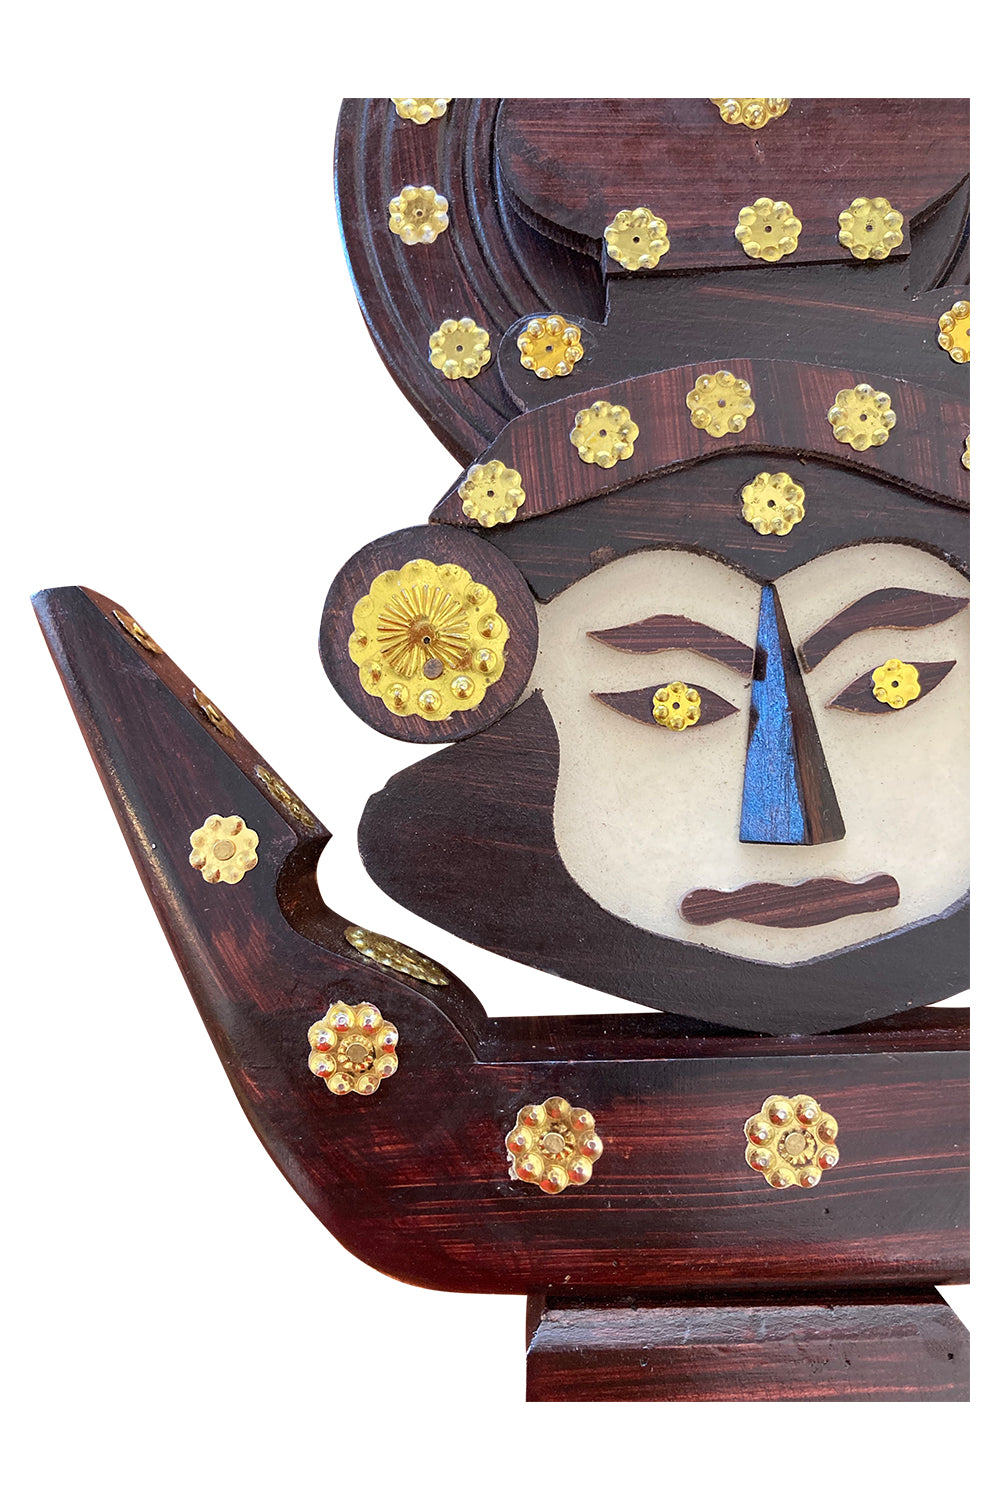 Southloom Handmade Kathakali Face on Chundan Vallam (Snake Boat) Handicraft